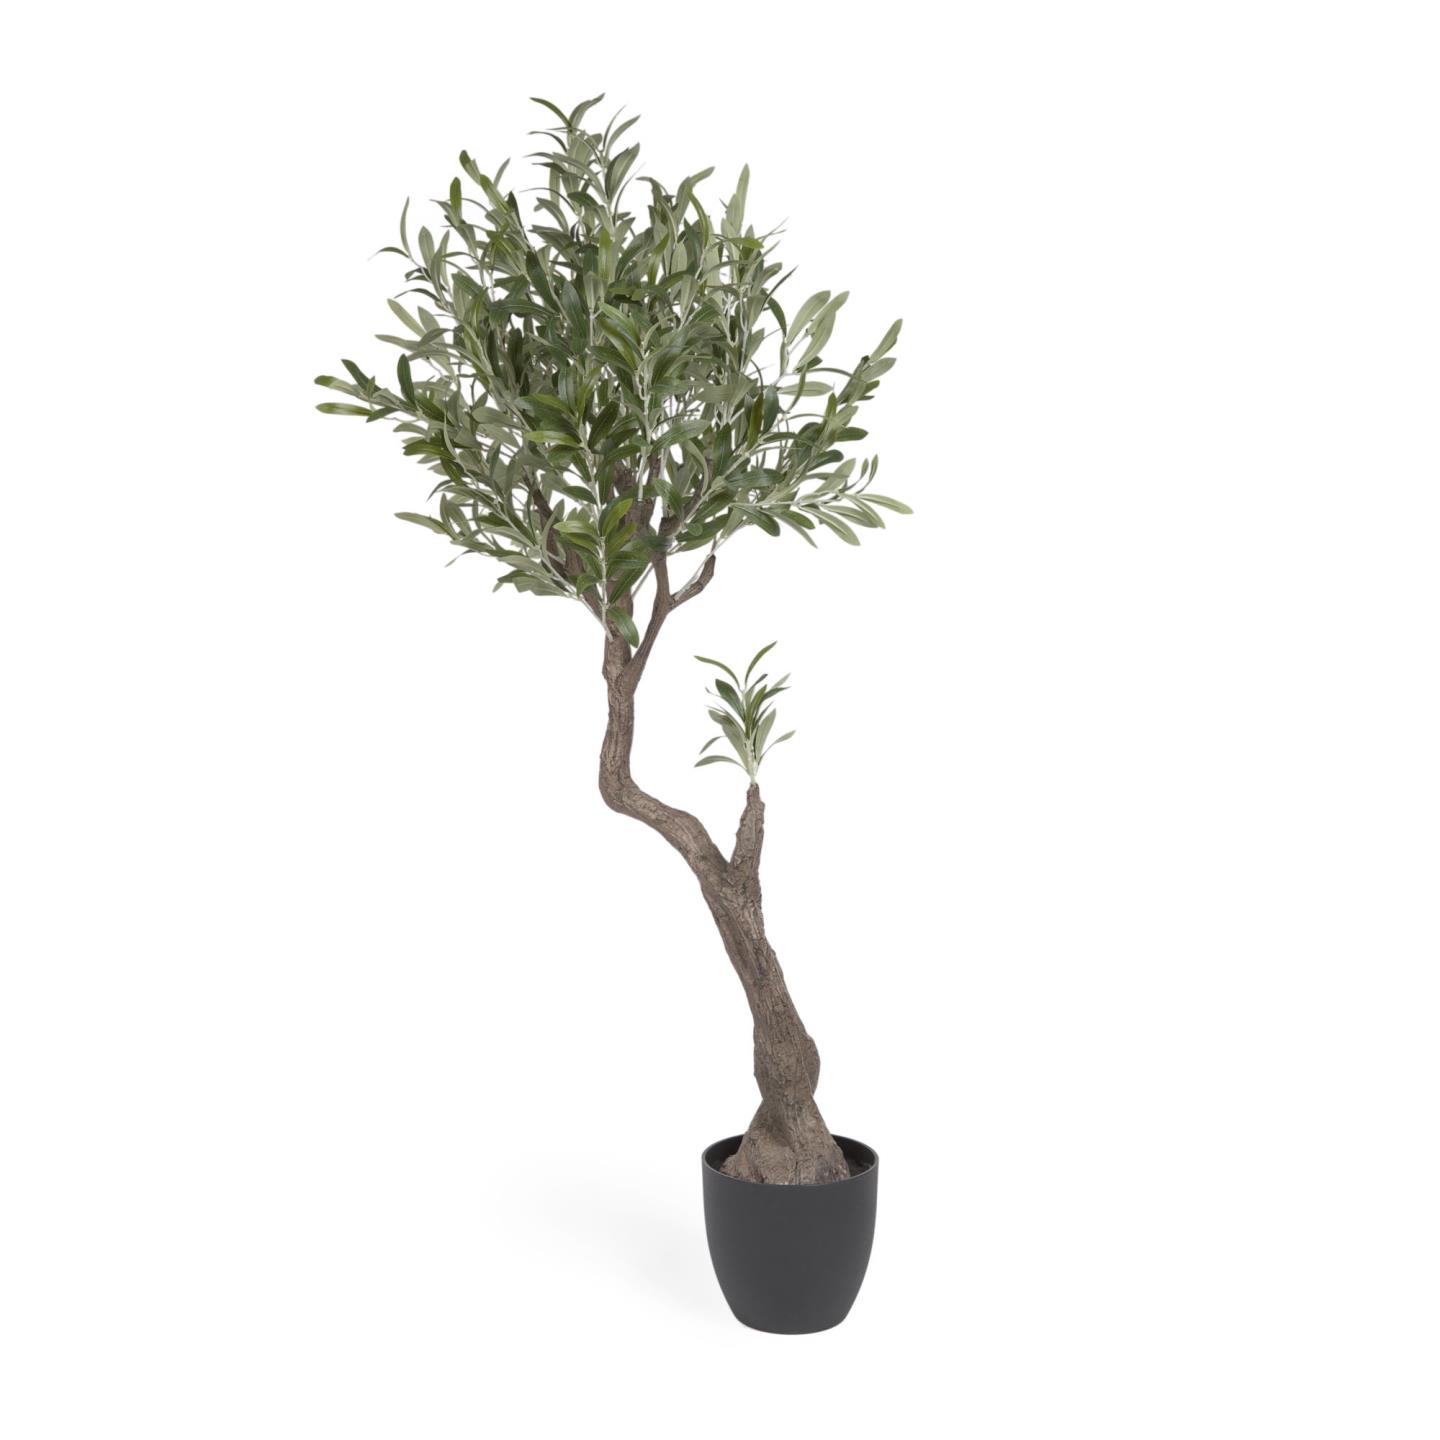 LAFORMA Kunstigt oliventræ, m. sort plantepotte - grøn polyethylen og cement (H:140)